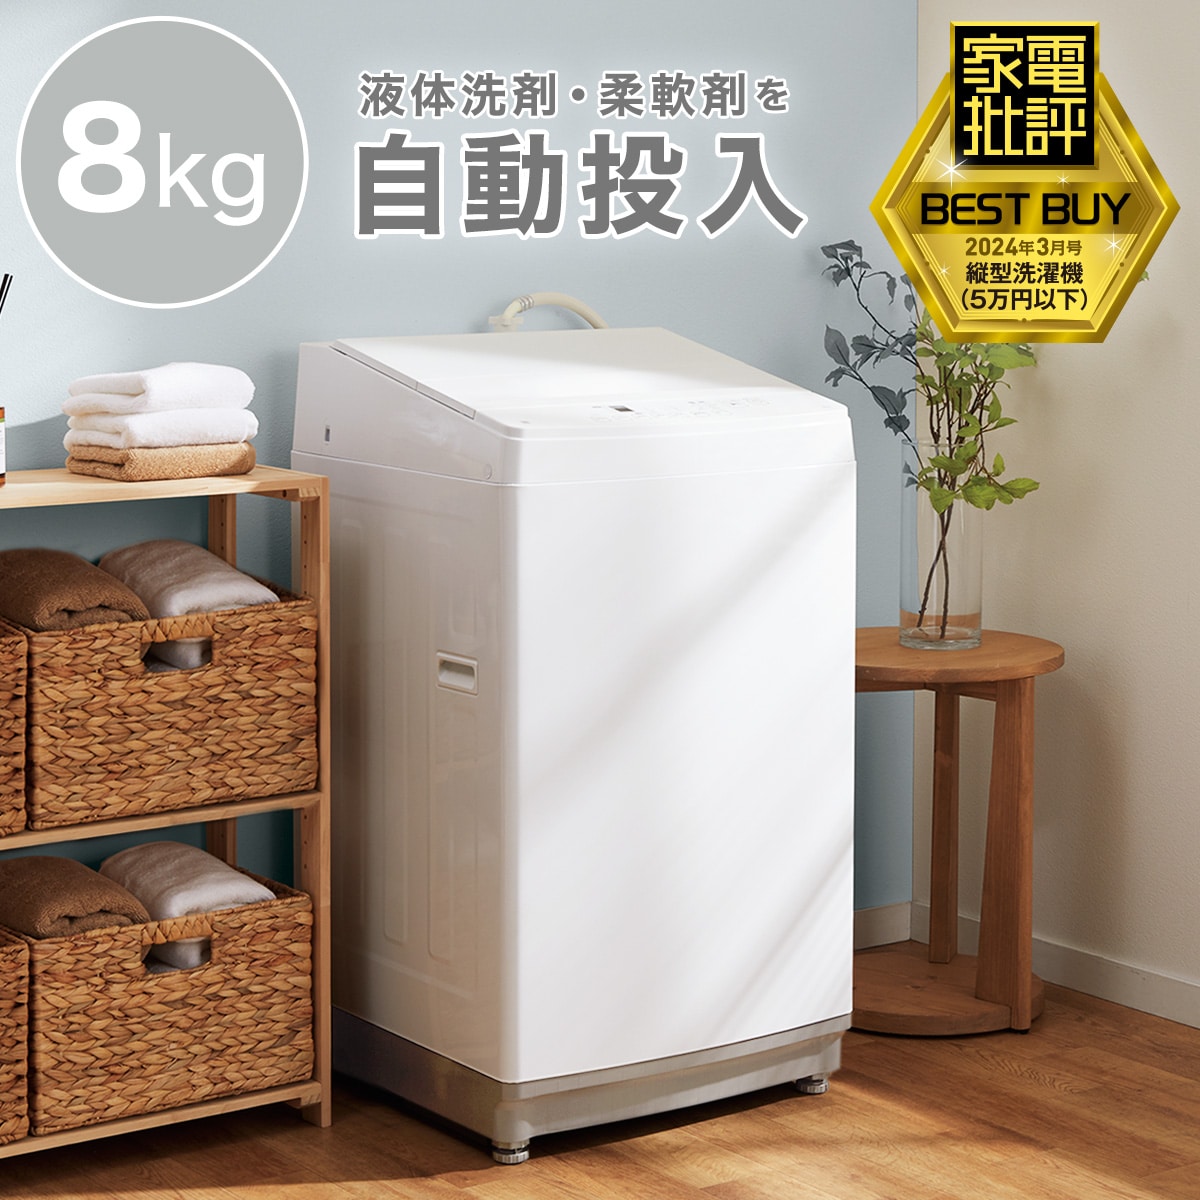 家電批評ベストバイ受賞】8kg洗剤自動投入洗濯機(NT80J1 ホワイト)通販 